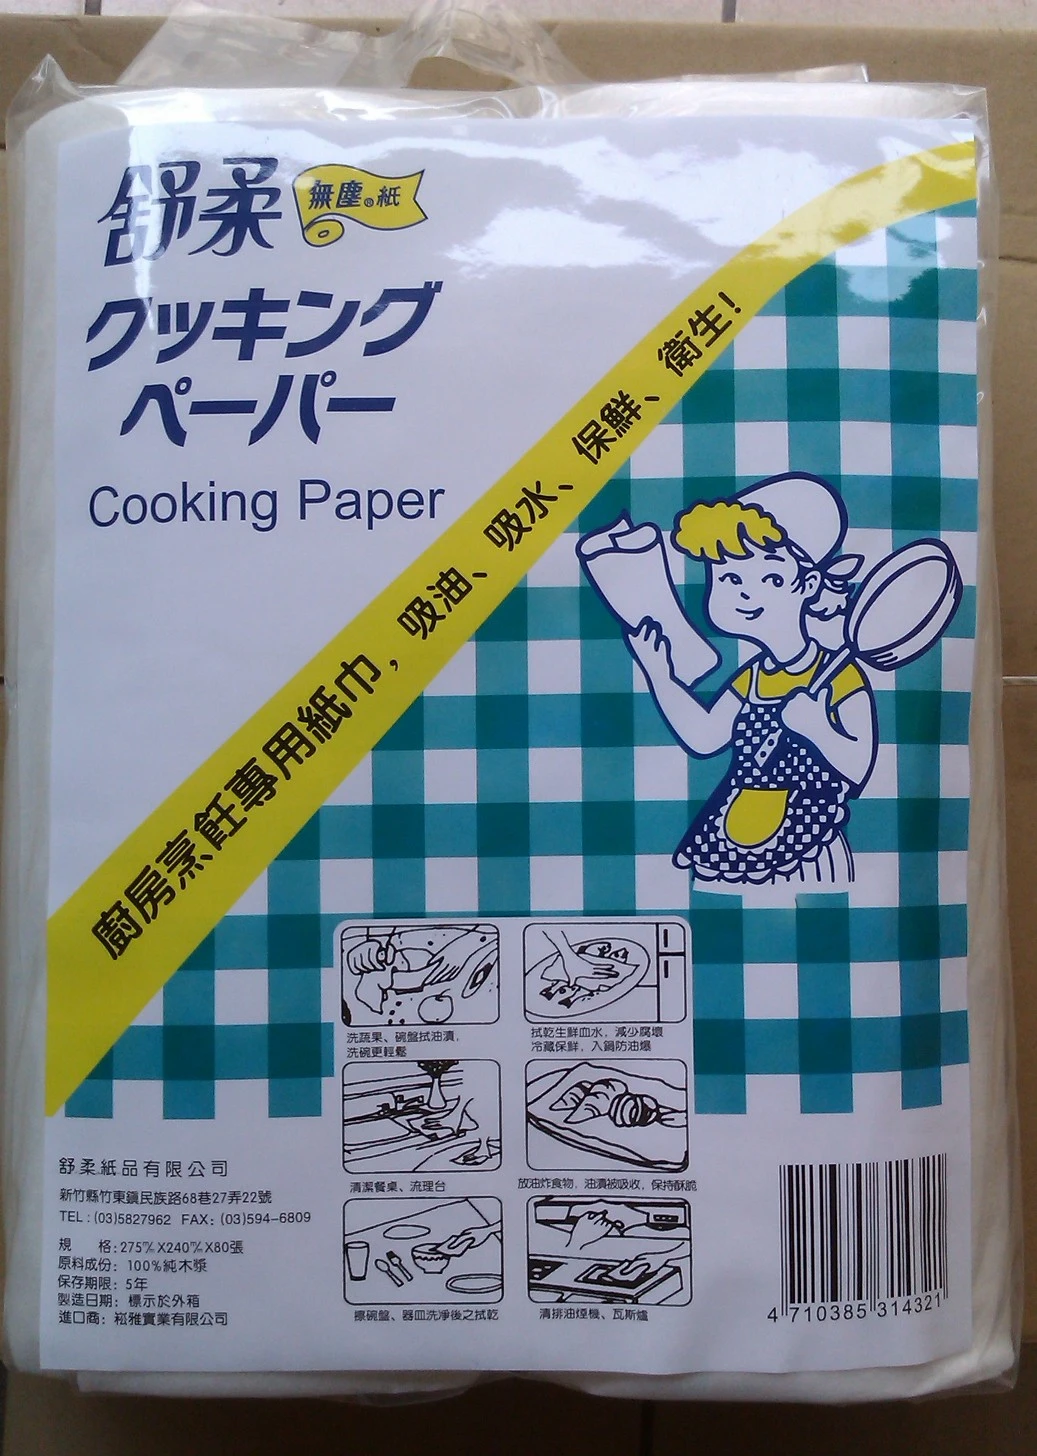 日式廚房家用紙巾~~超吸油吸水紙巾